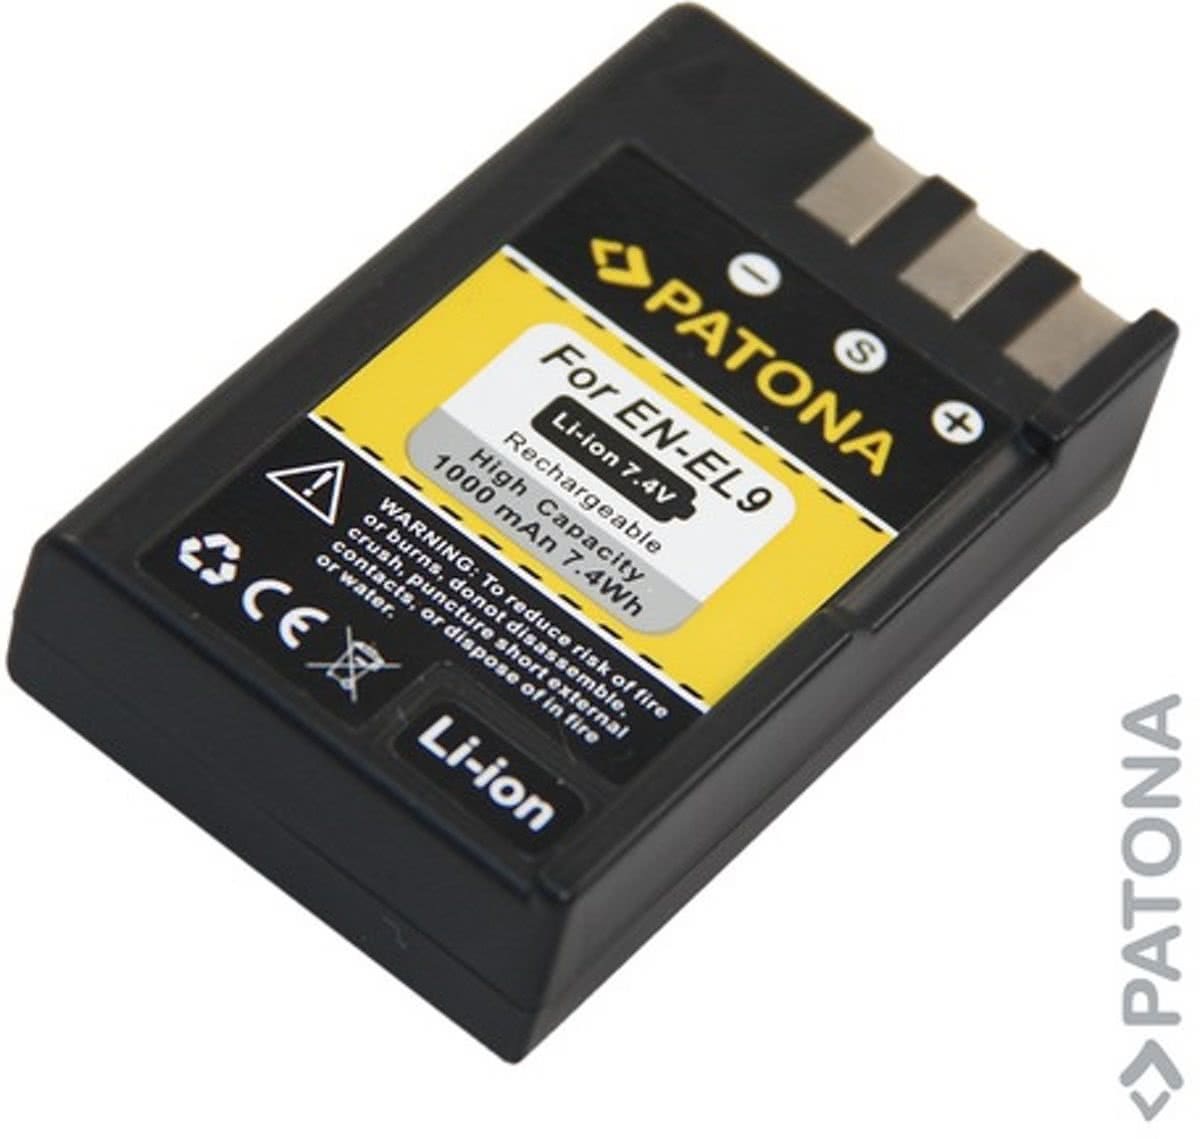 Paton, A. Battery EN-EL9 ENEL9 for Nikon D40 D40 x D60 D5000